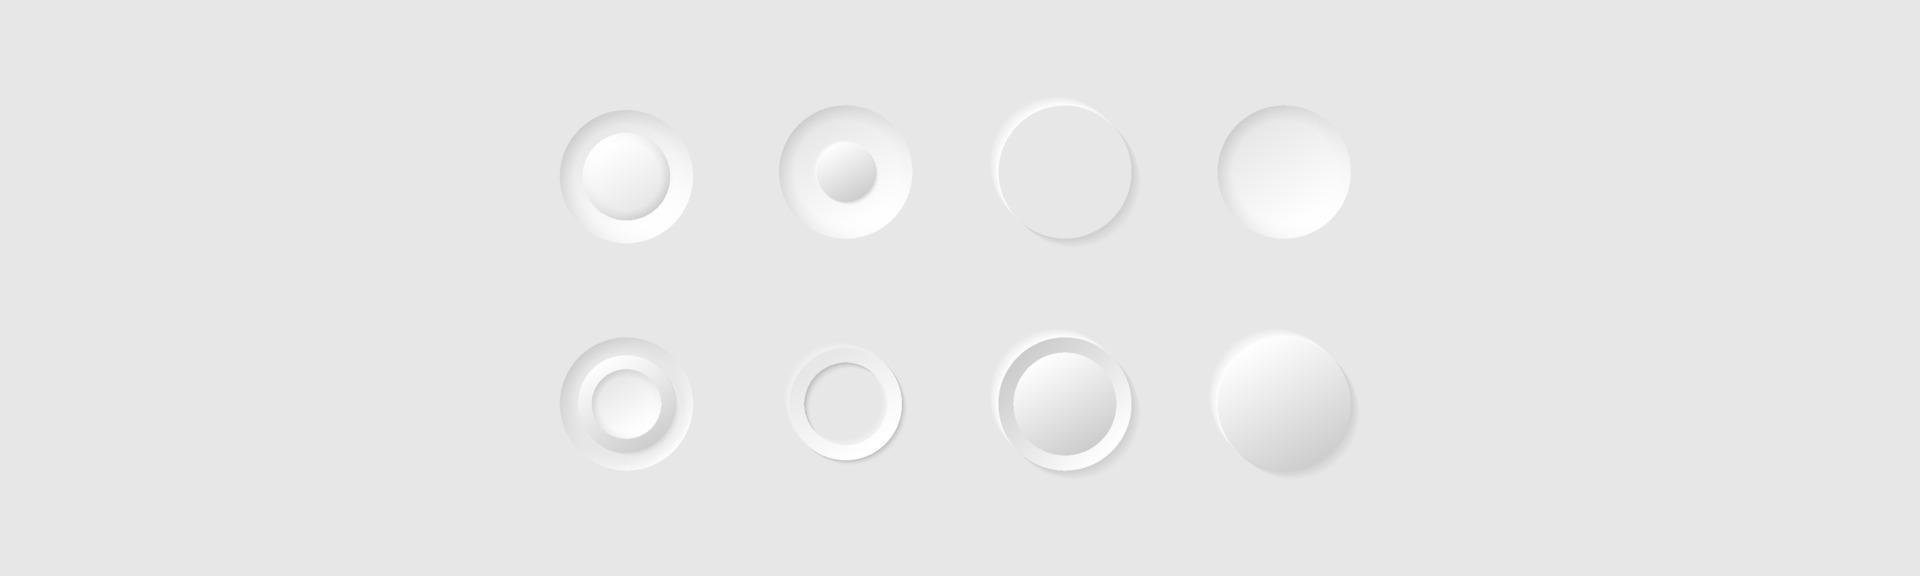 botões ou ícones do círculo branco do estilo do minimalismo. Conjunto de vetores de elementos de estilo de neumorfismo. site moderno ou design de aplicativo móvel. coleção de design ui ux neumórfico